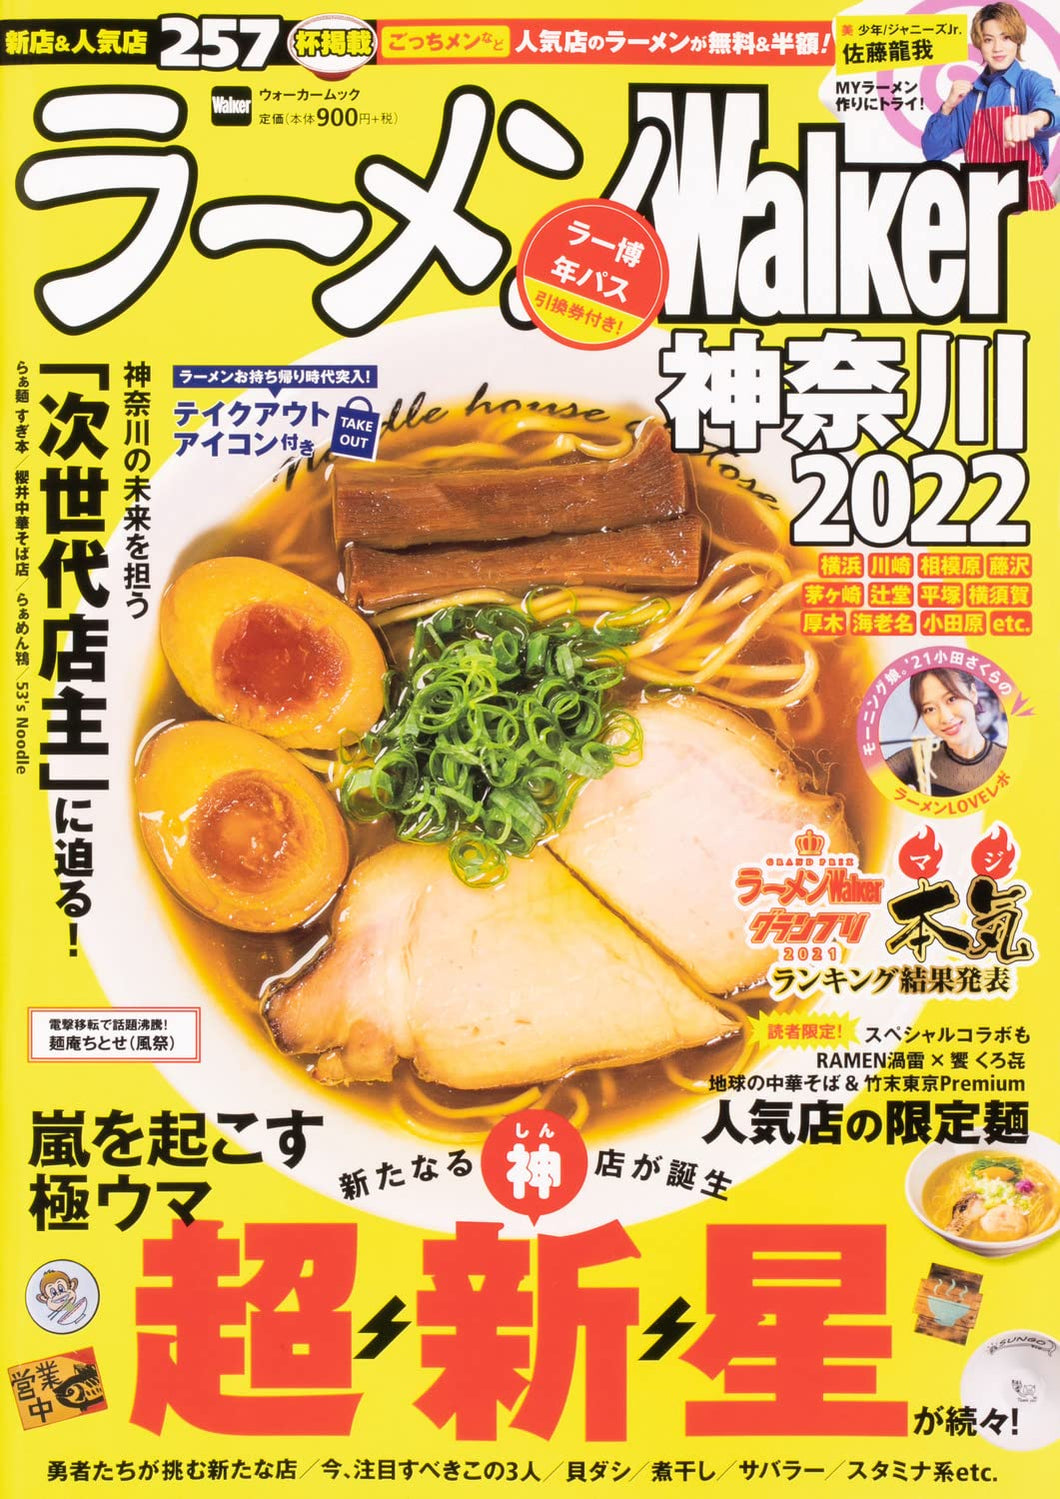 Ramen Walker Kanagawa Edition 2022